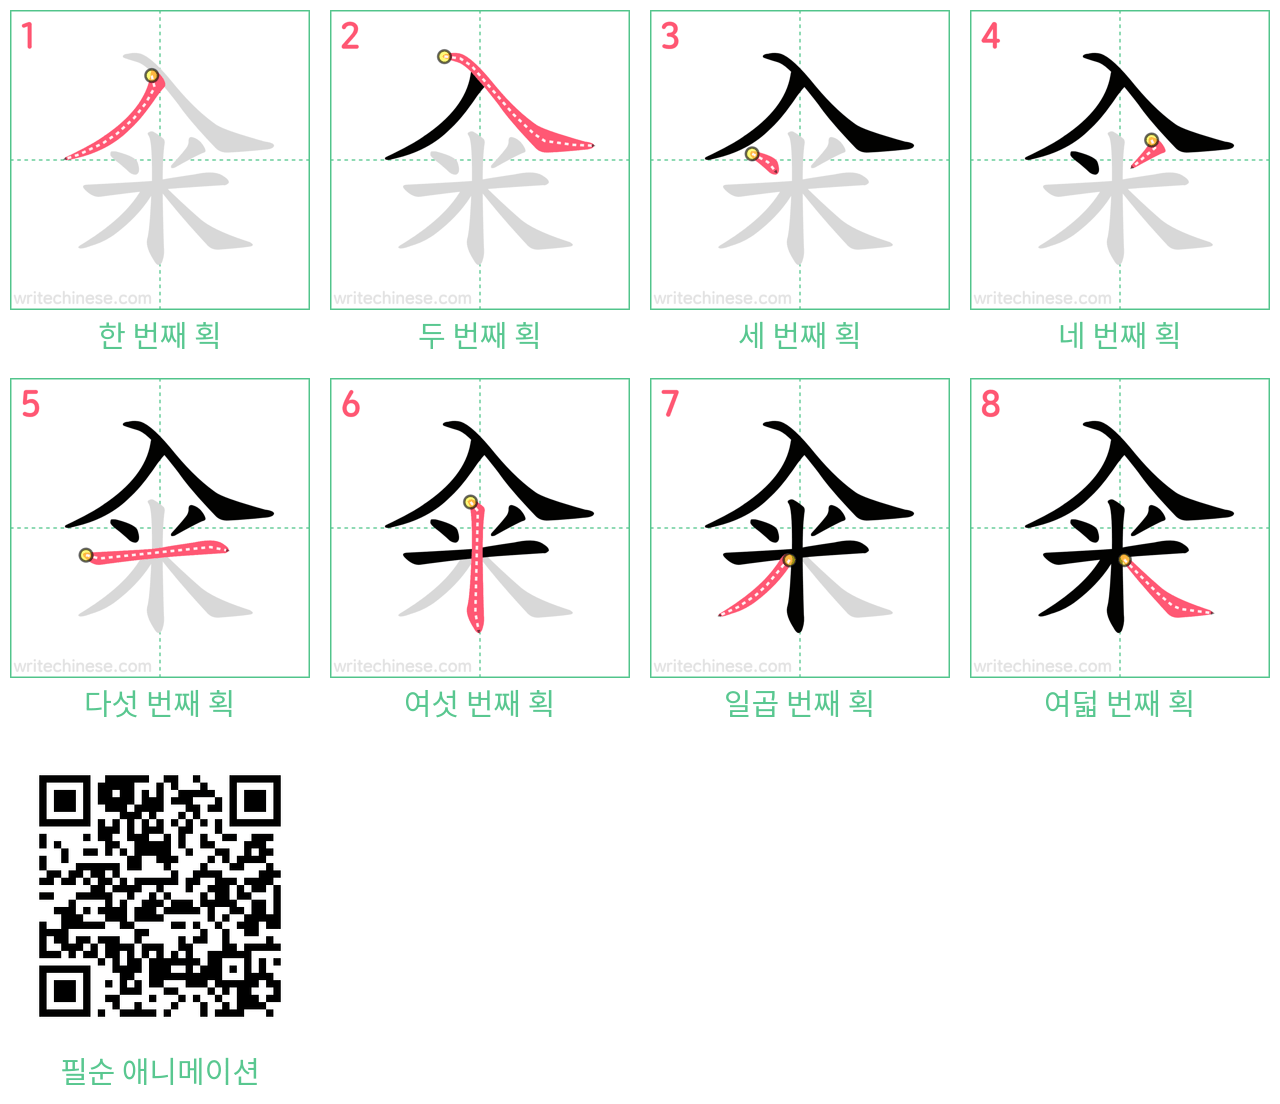 籴 step-by-step stroke order diagrams